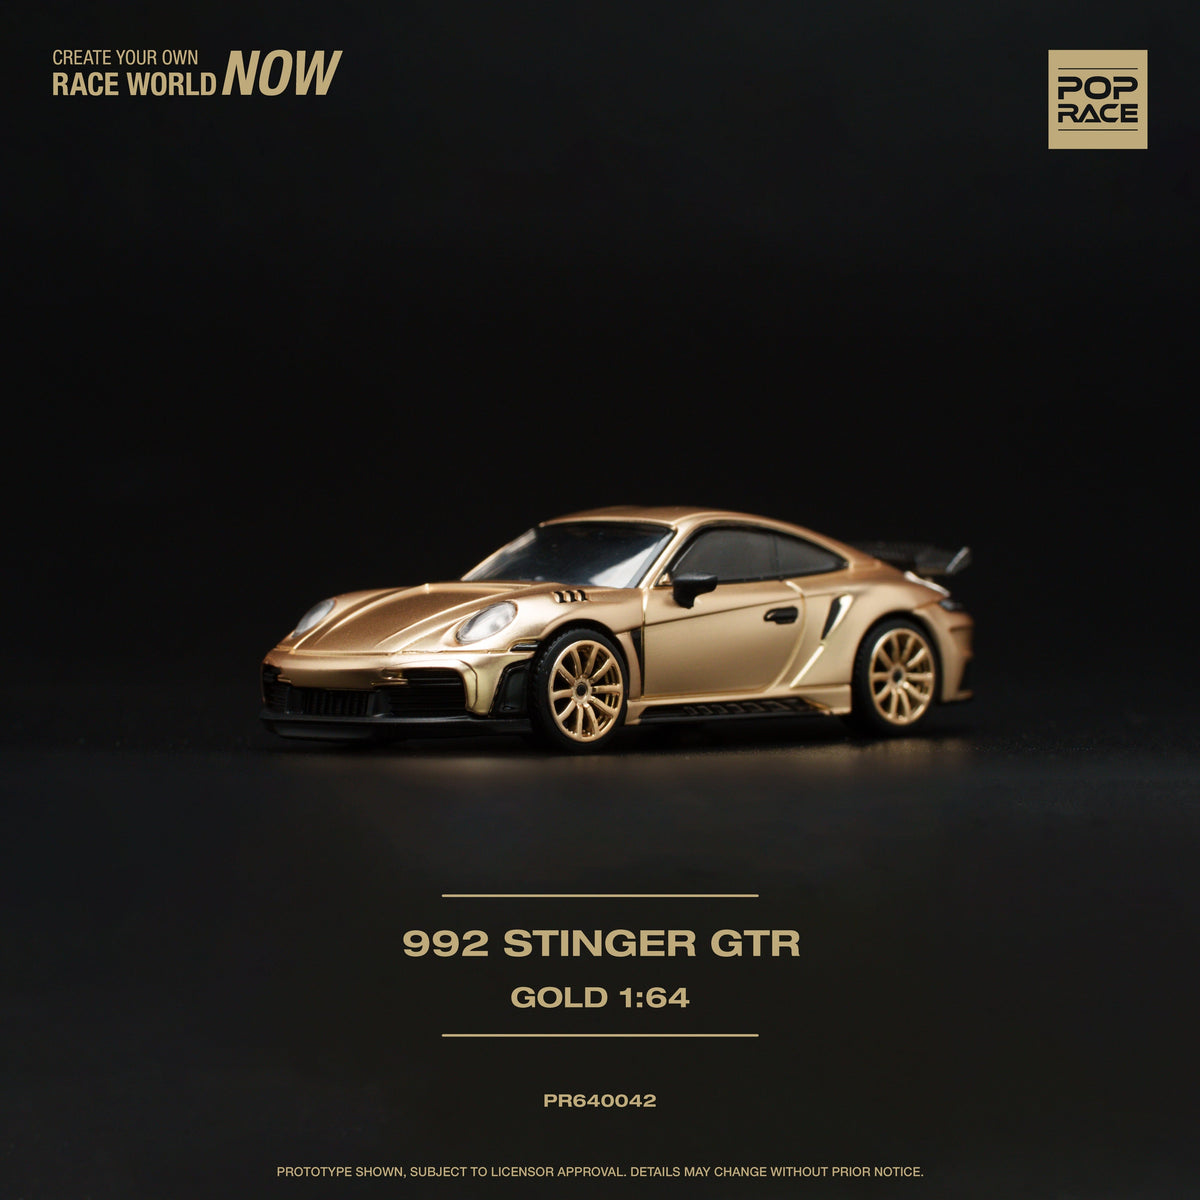 Porsche 992 Stinger Gold Pop Race 1/64 scale diecast car